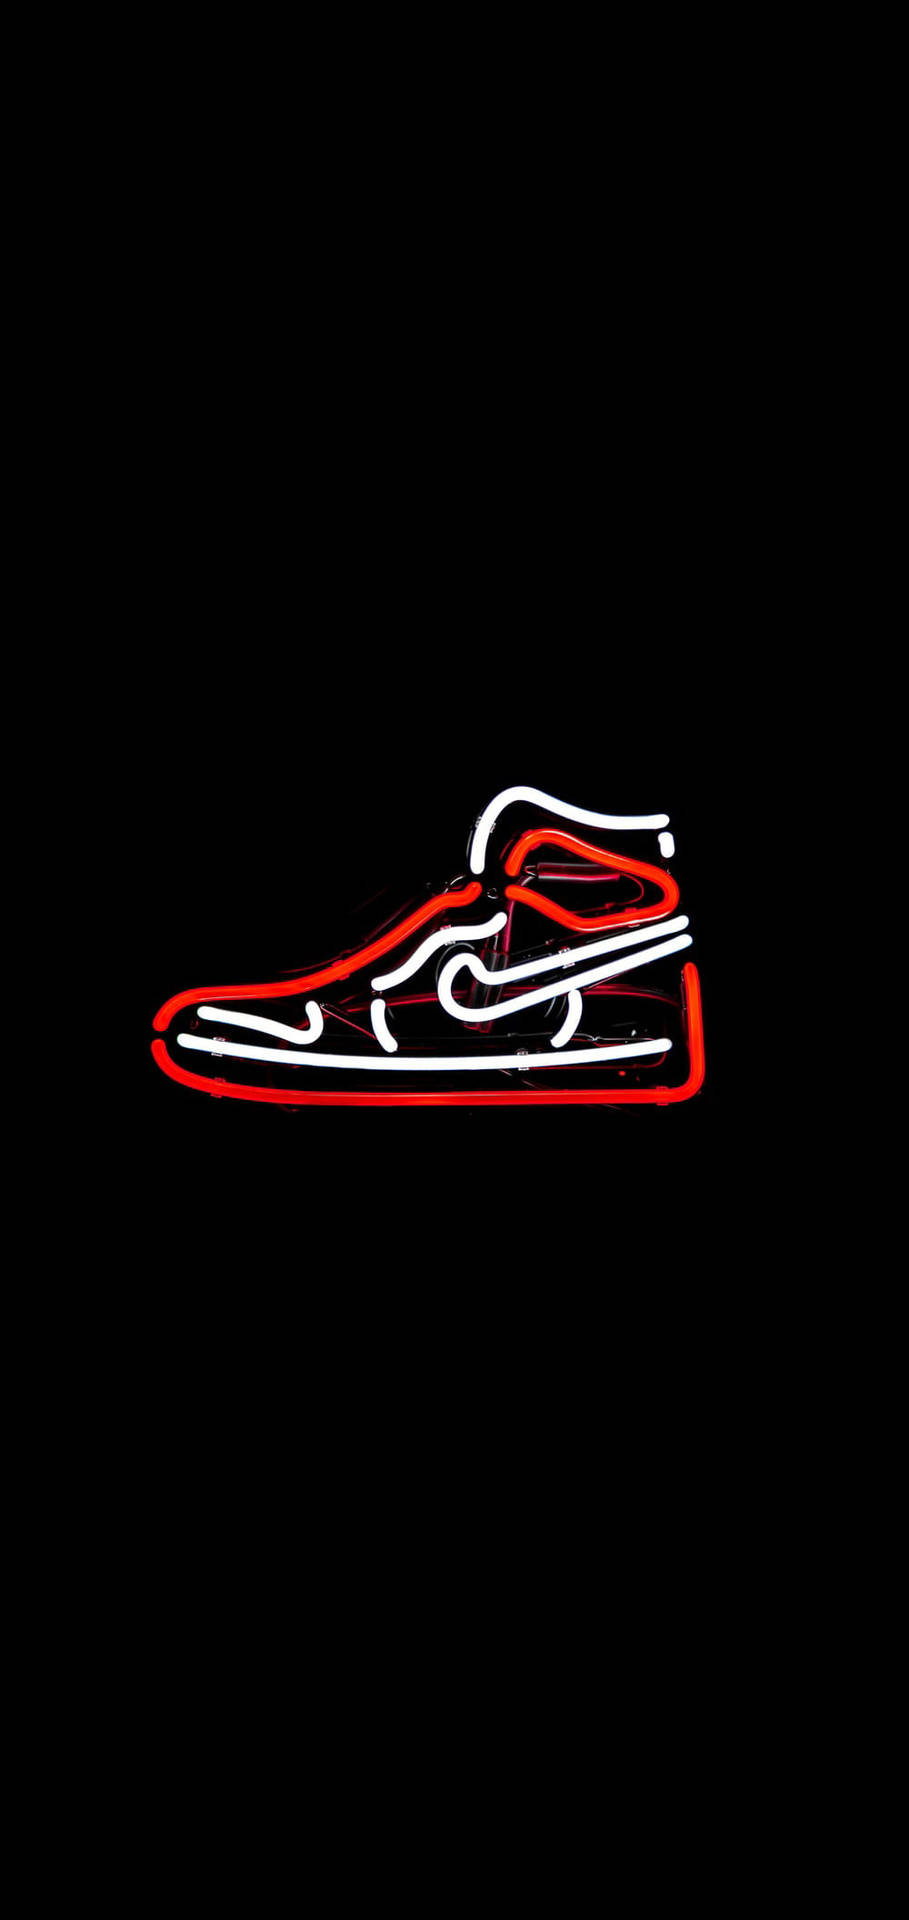 Charming Neon Nike Jordan 1 Background